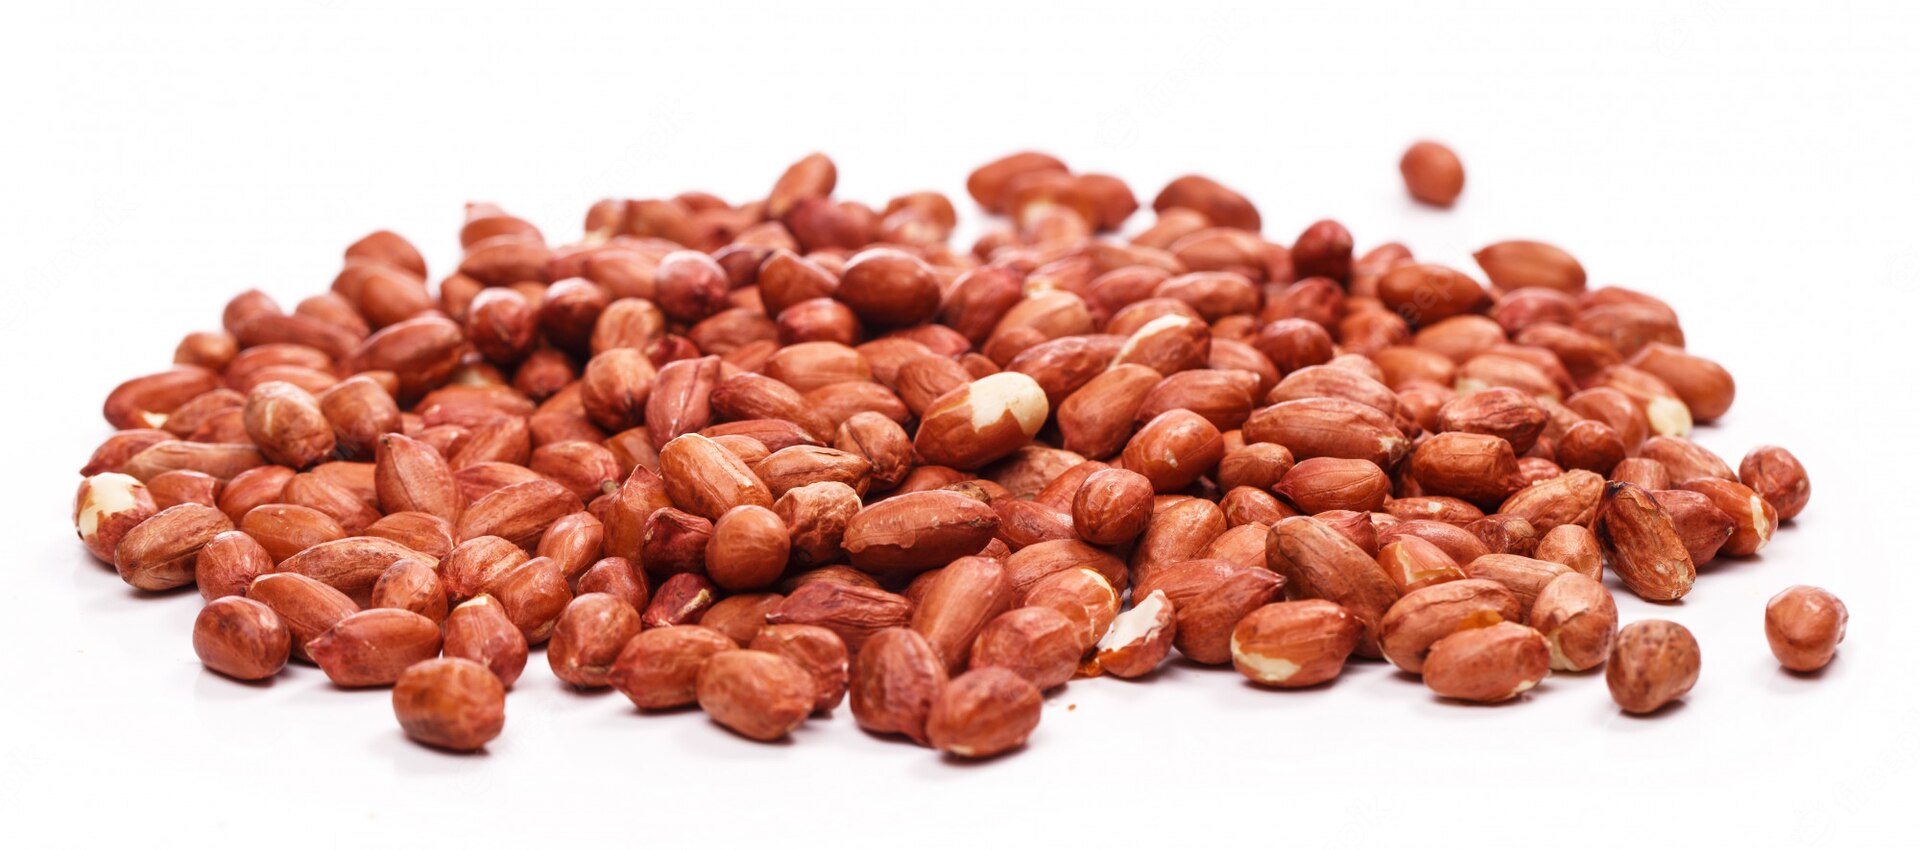 virginia type peanut kernels